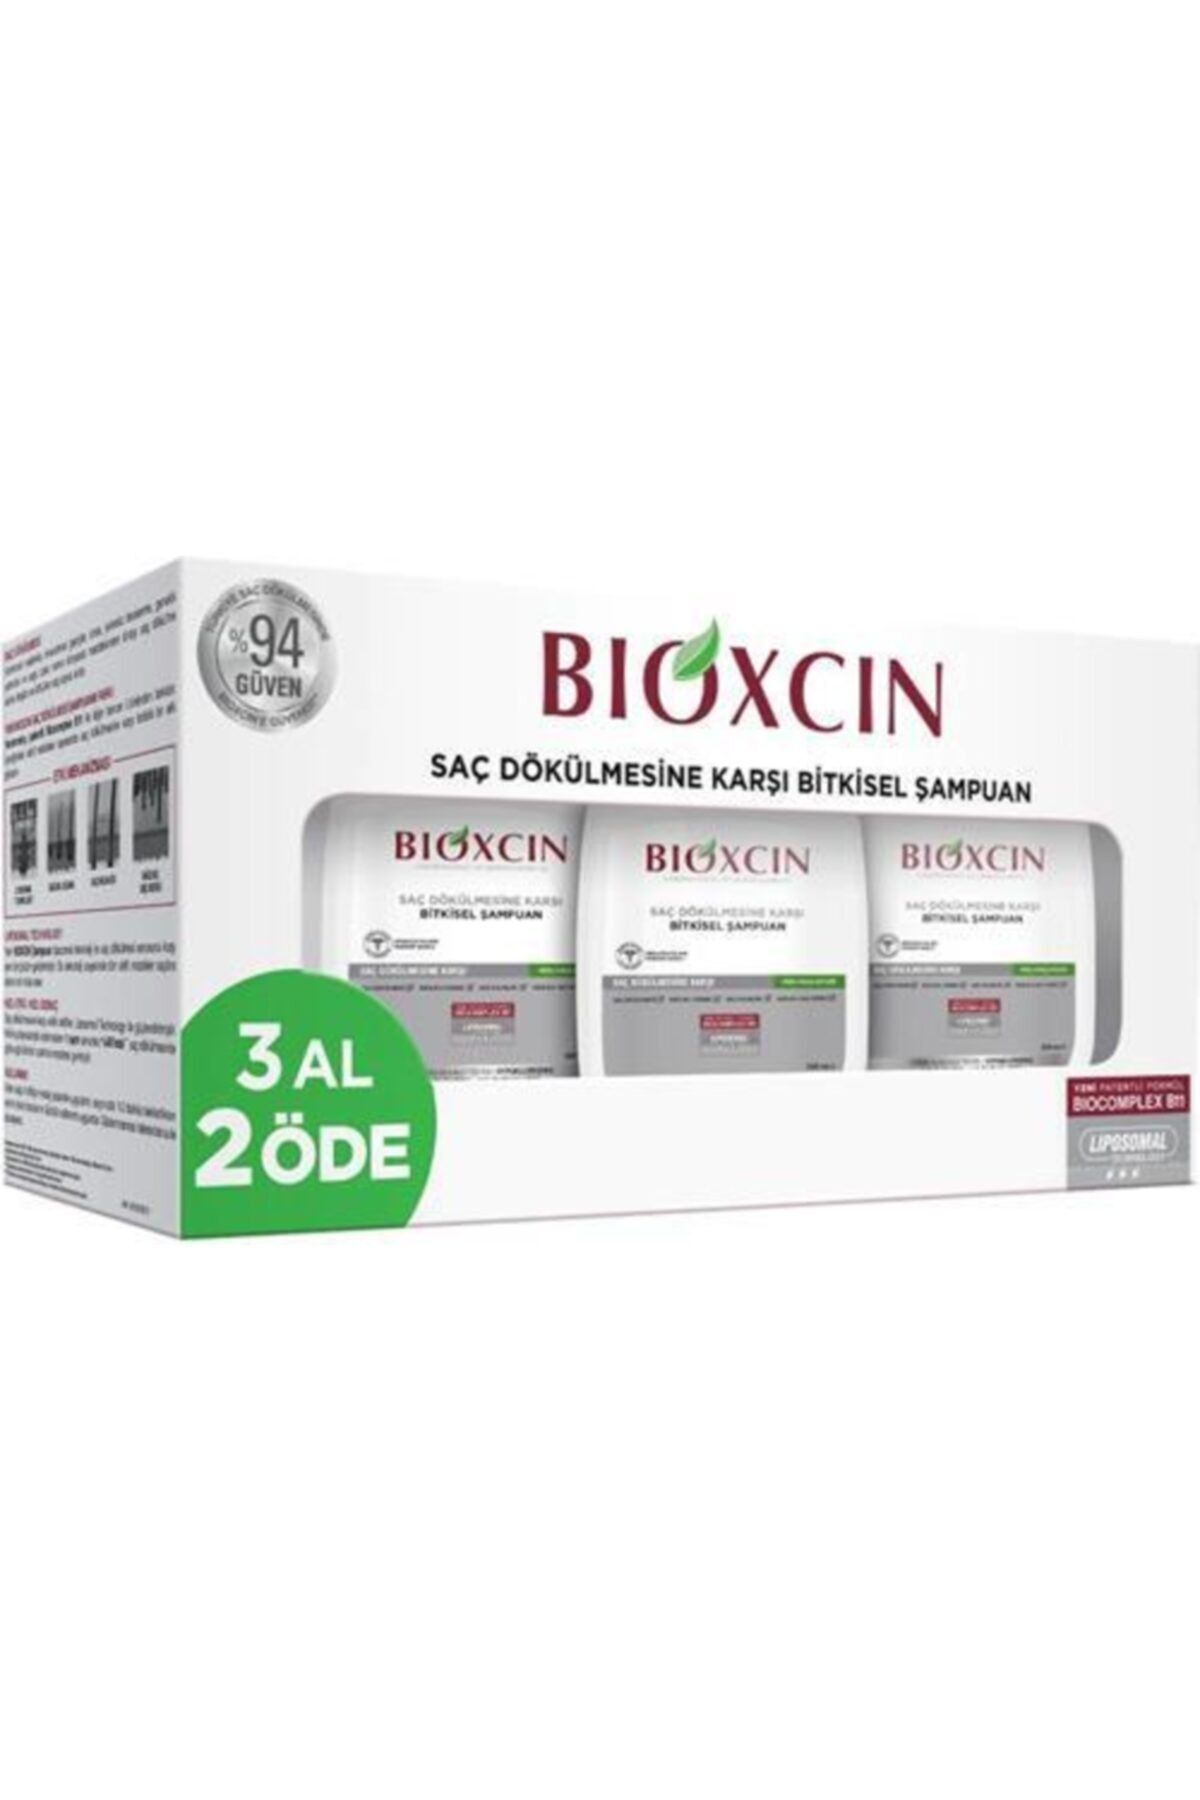 Bioxcin Bıoxcın Genesis( Klasik) 3al 2ode Yaglı Saçlar Için